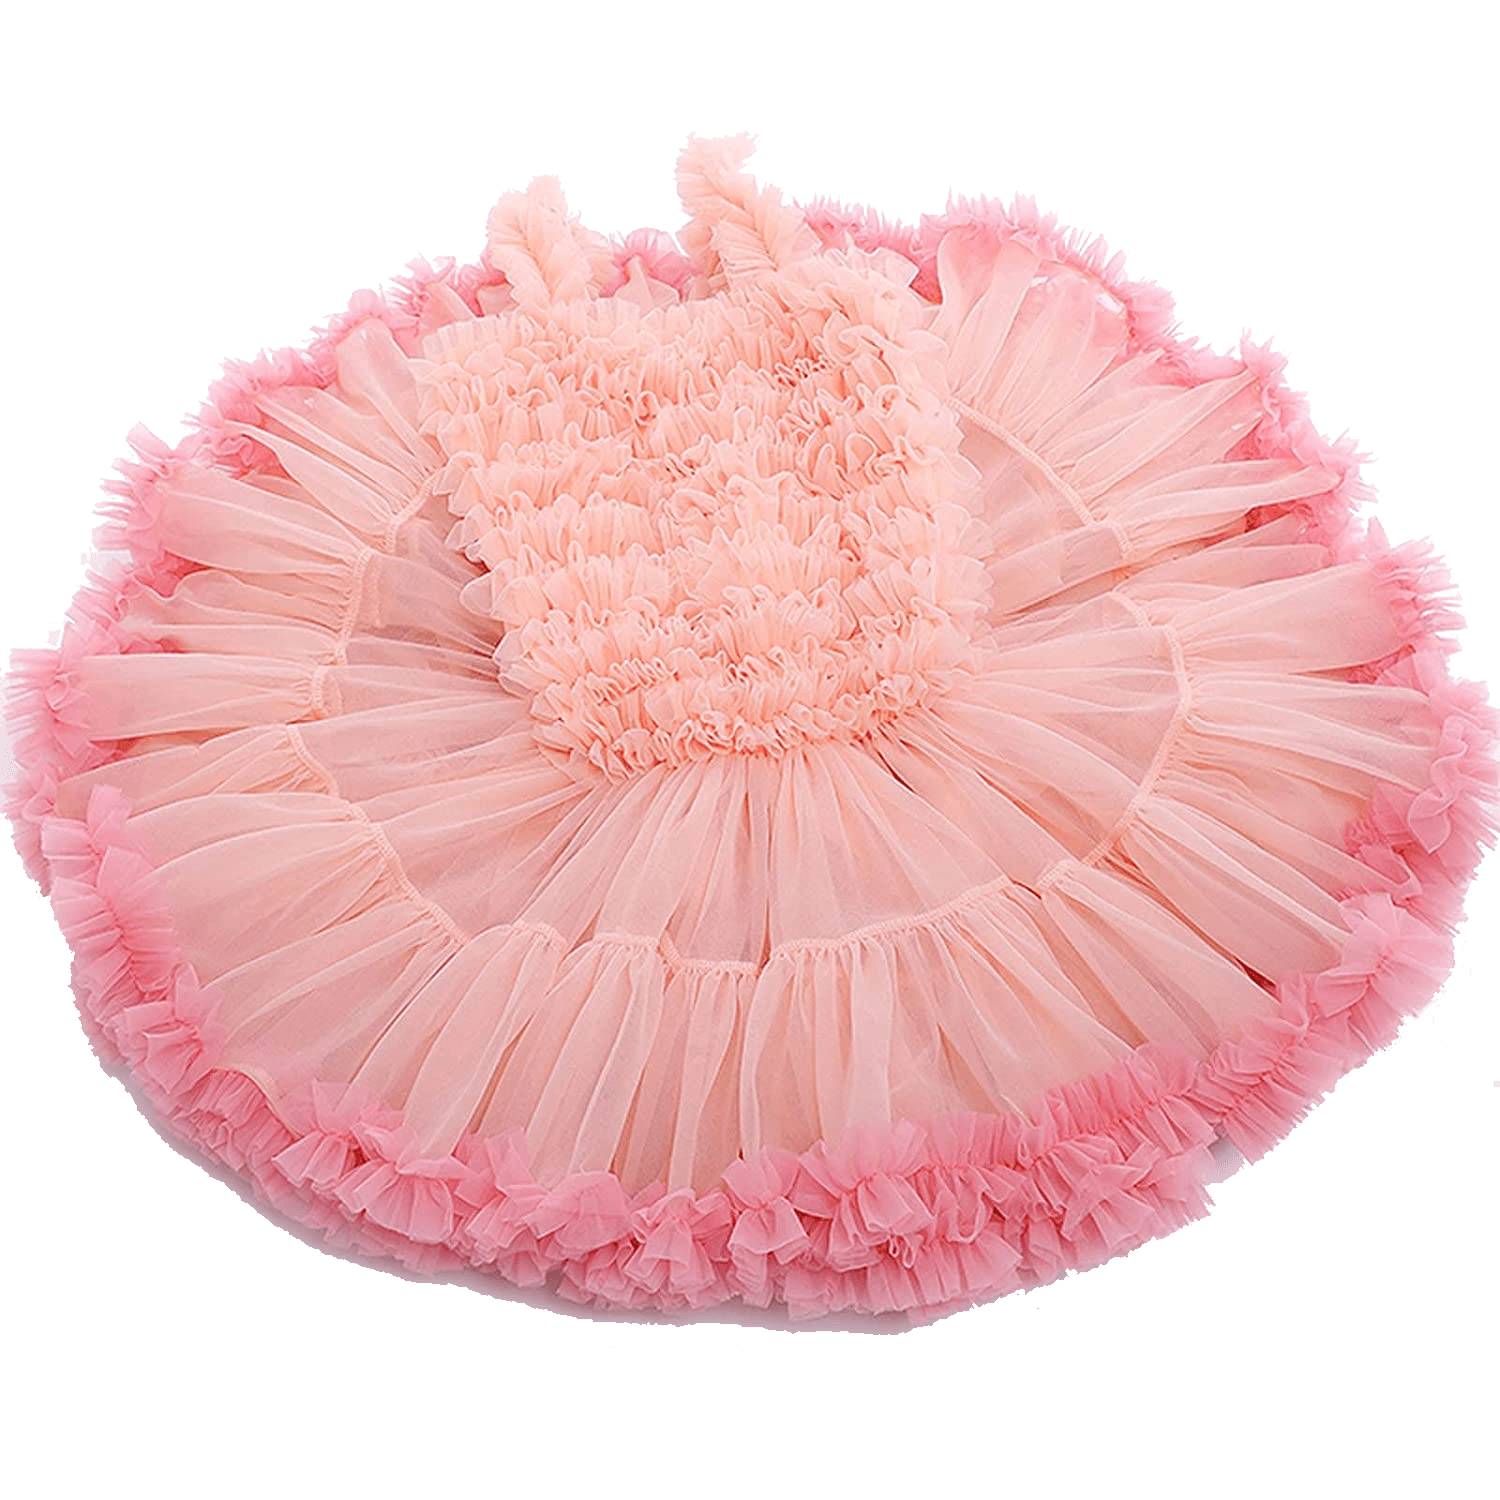 Ruffle Pink Dress